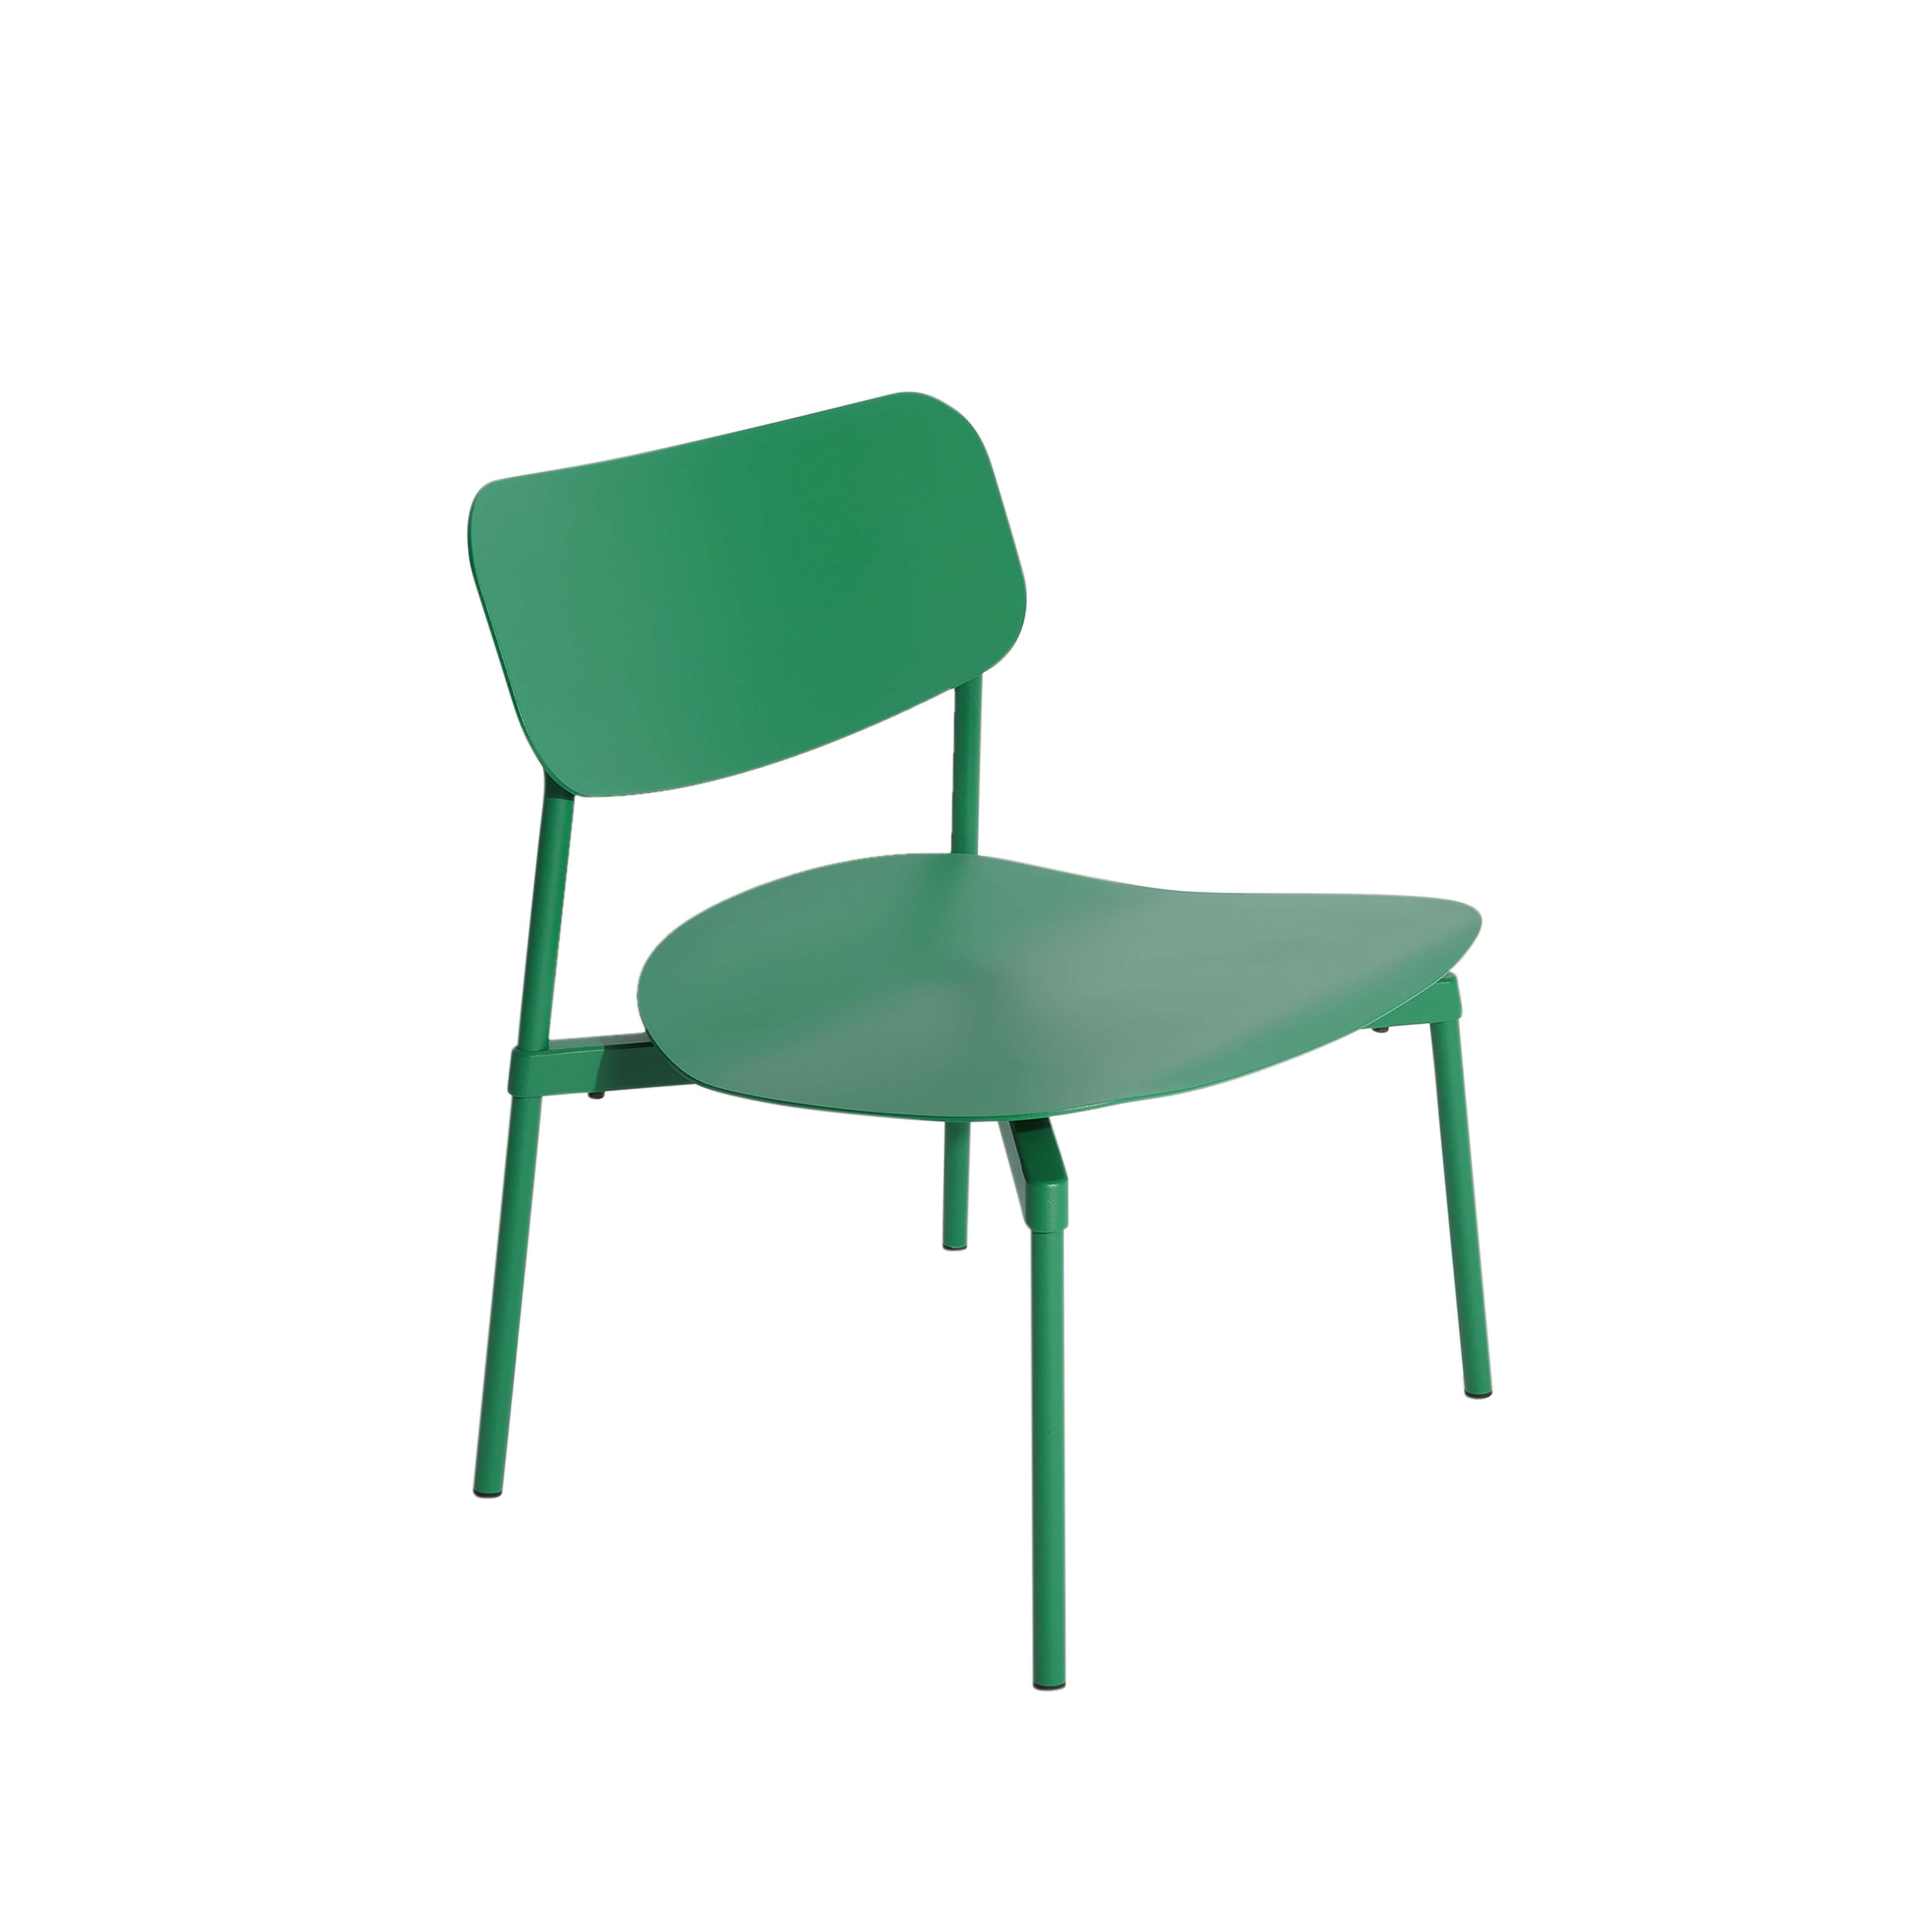 Petite Friture Fromme Lounge Armchair in Mint-green Aluminium by Tom Chung, 2020

La collection S/One se distingue par sa ligne épurée et son design compact. Les absorbeurs placés sous les sièges leur confèrent une flexibilité souple et très